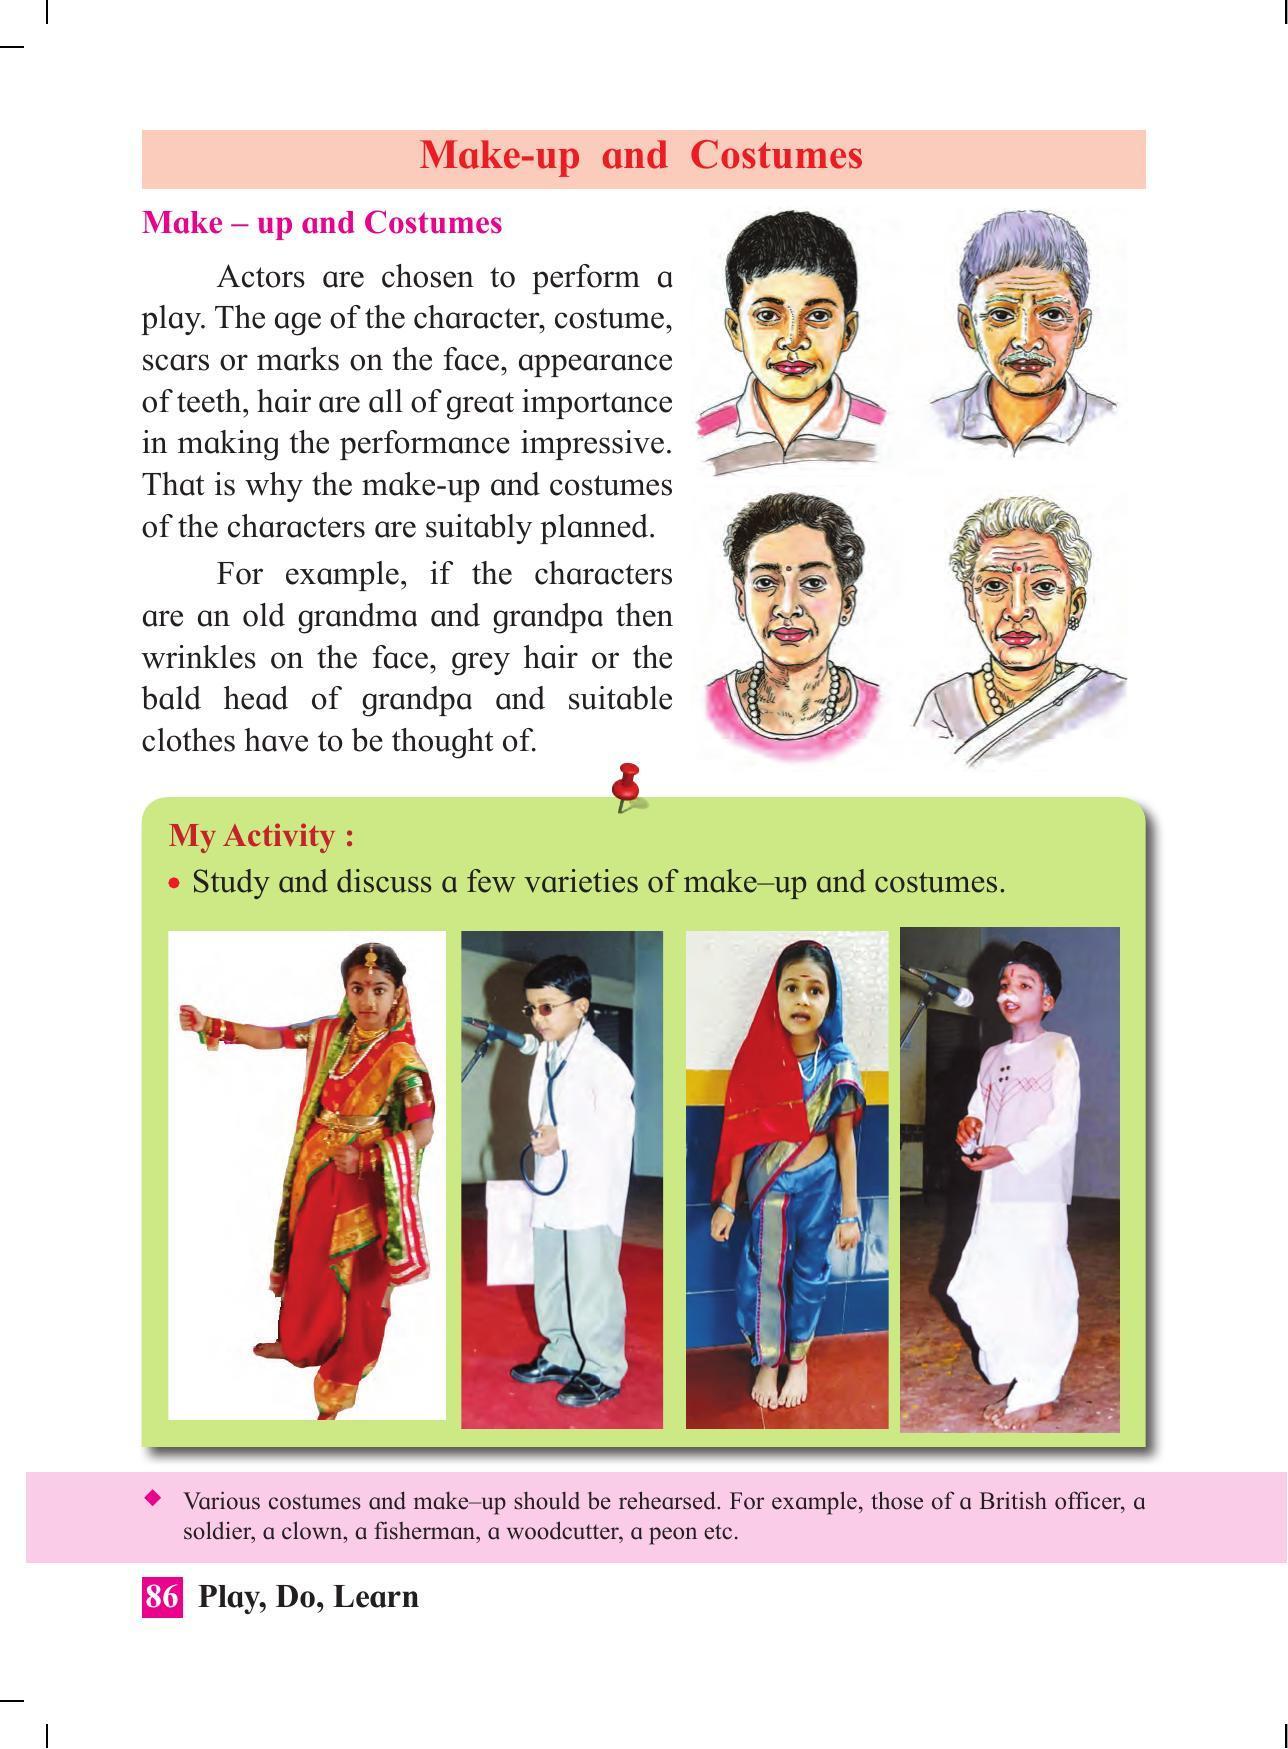 Maharashtra Board Class 4 Play Do Learn (English Medium) Textbook - Page 95